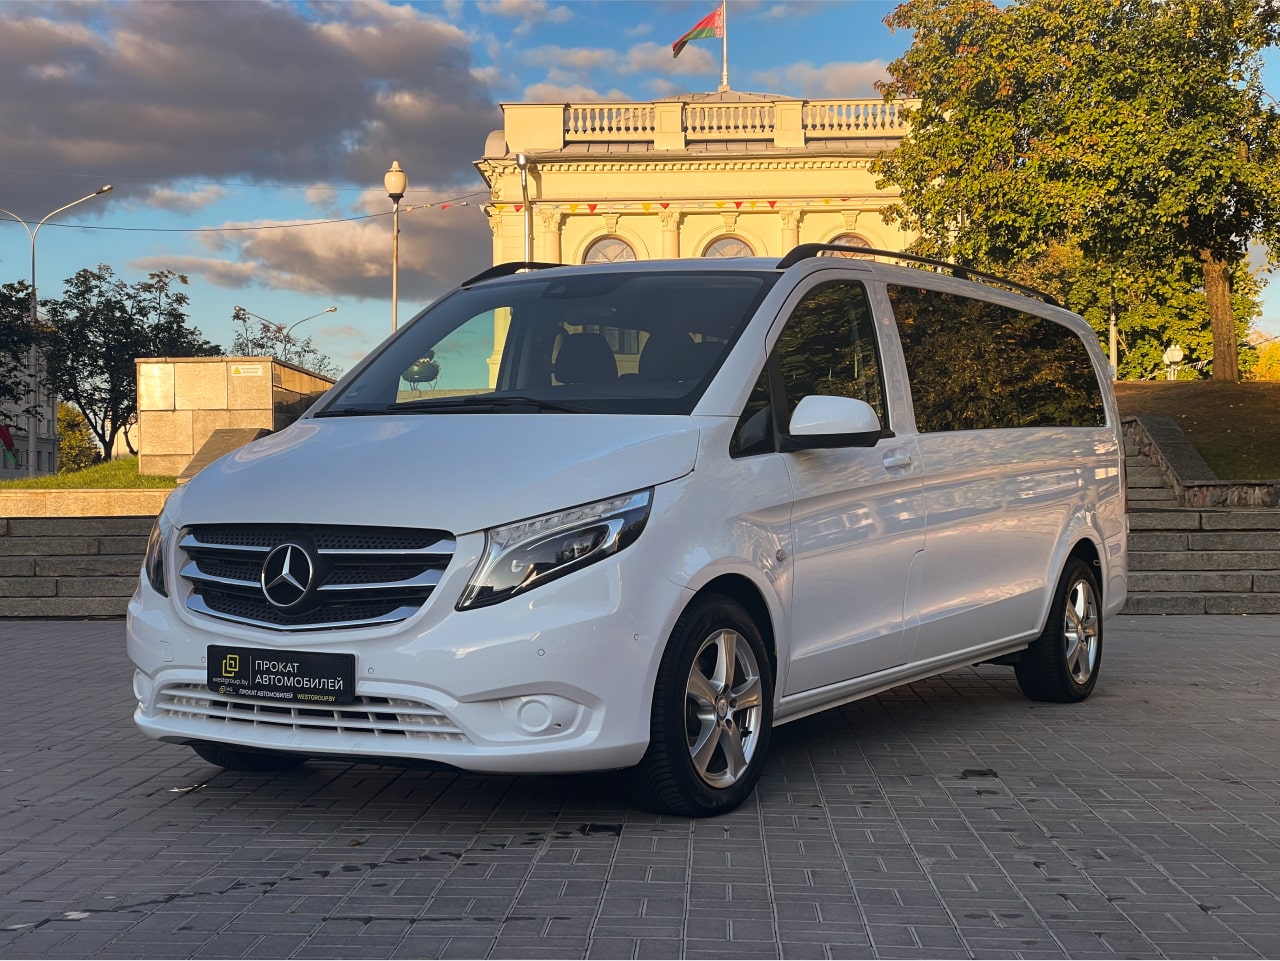 Аренда  Mercedes Benz Vito 116 CDI AT Extra Long Select 8+1  7 класса 2018-2020 года в городе Минск от 85 $/сутки,  двигатель: ДТ , объем 2.1 литров, КАСКО (Мультидрайв), без водителя, вид 1 - West Group